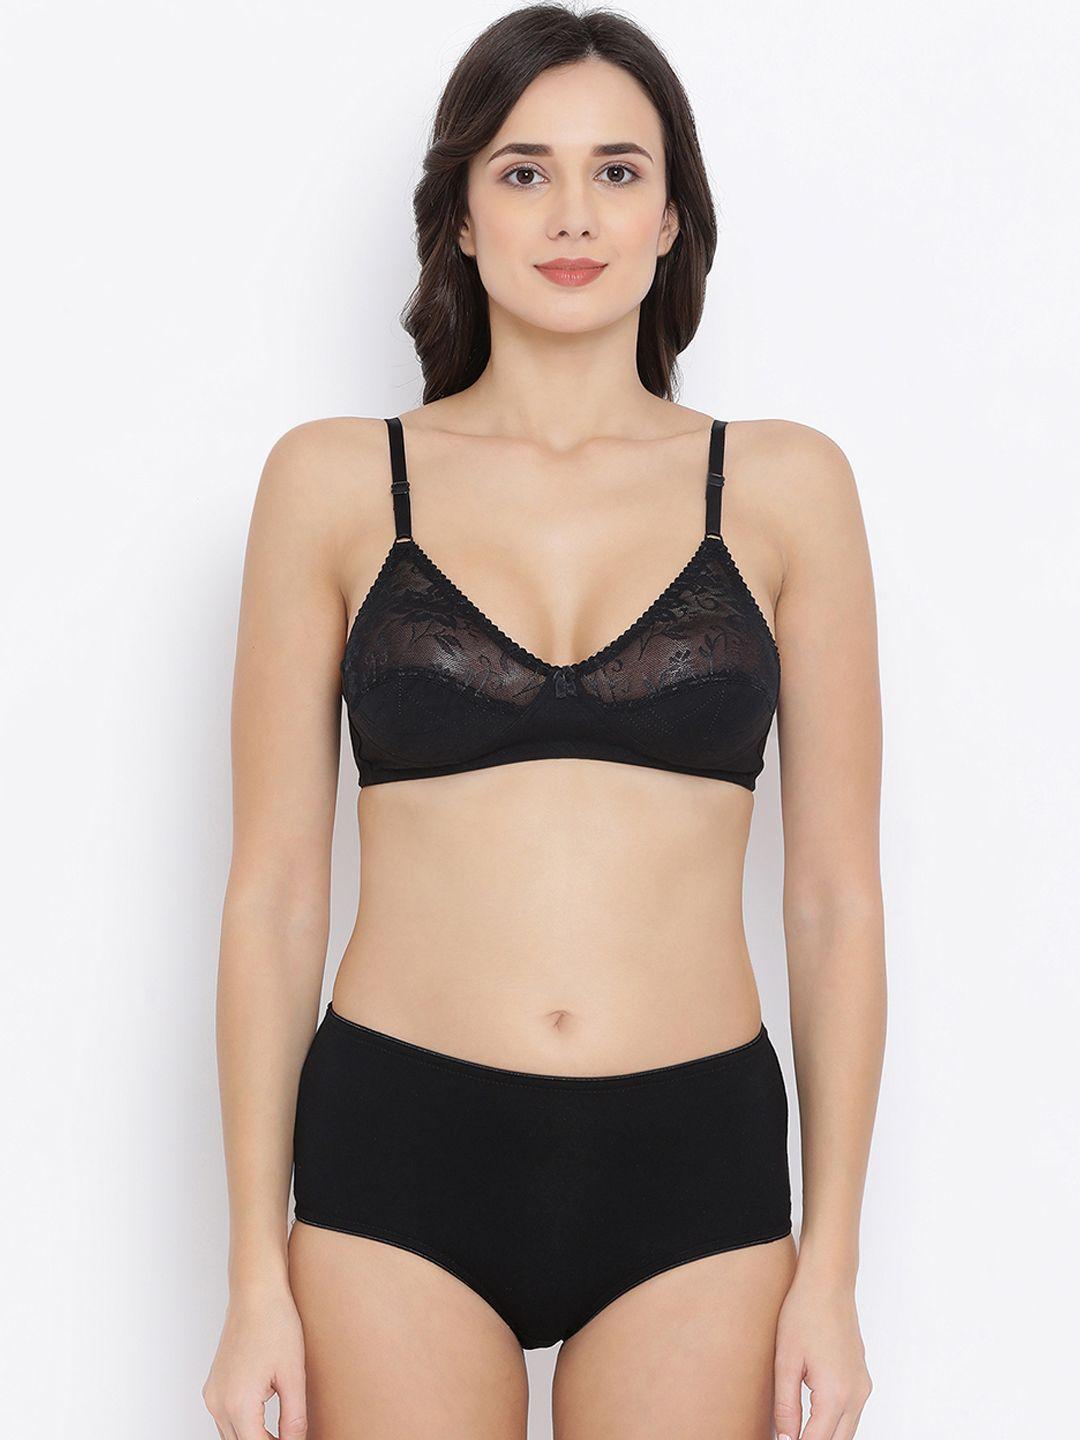 clovia women black solid lingerie set combbp86532b